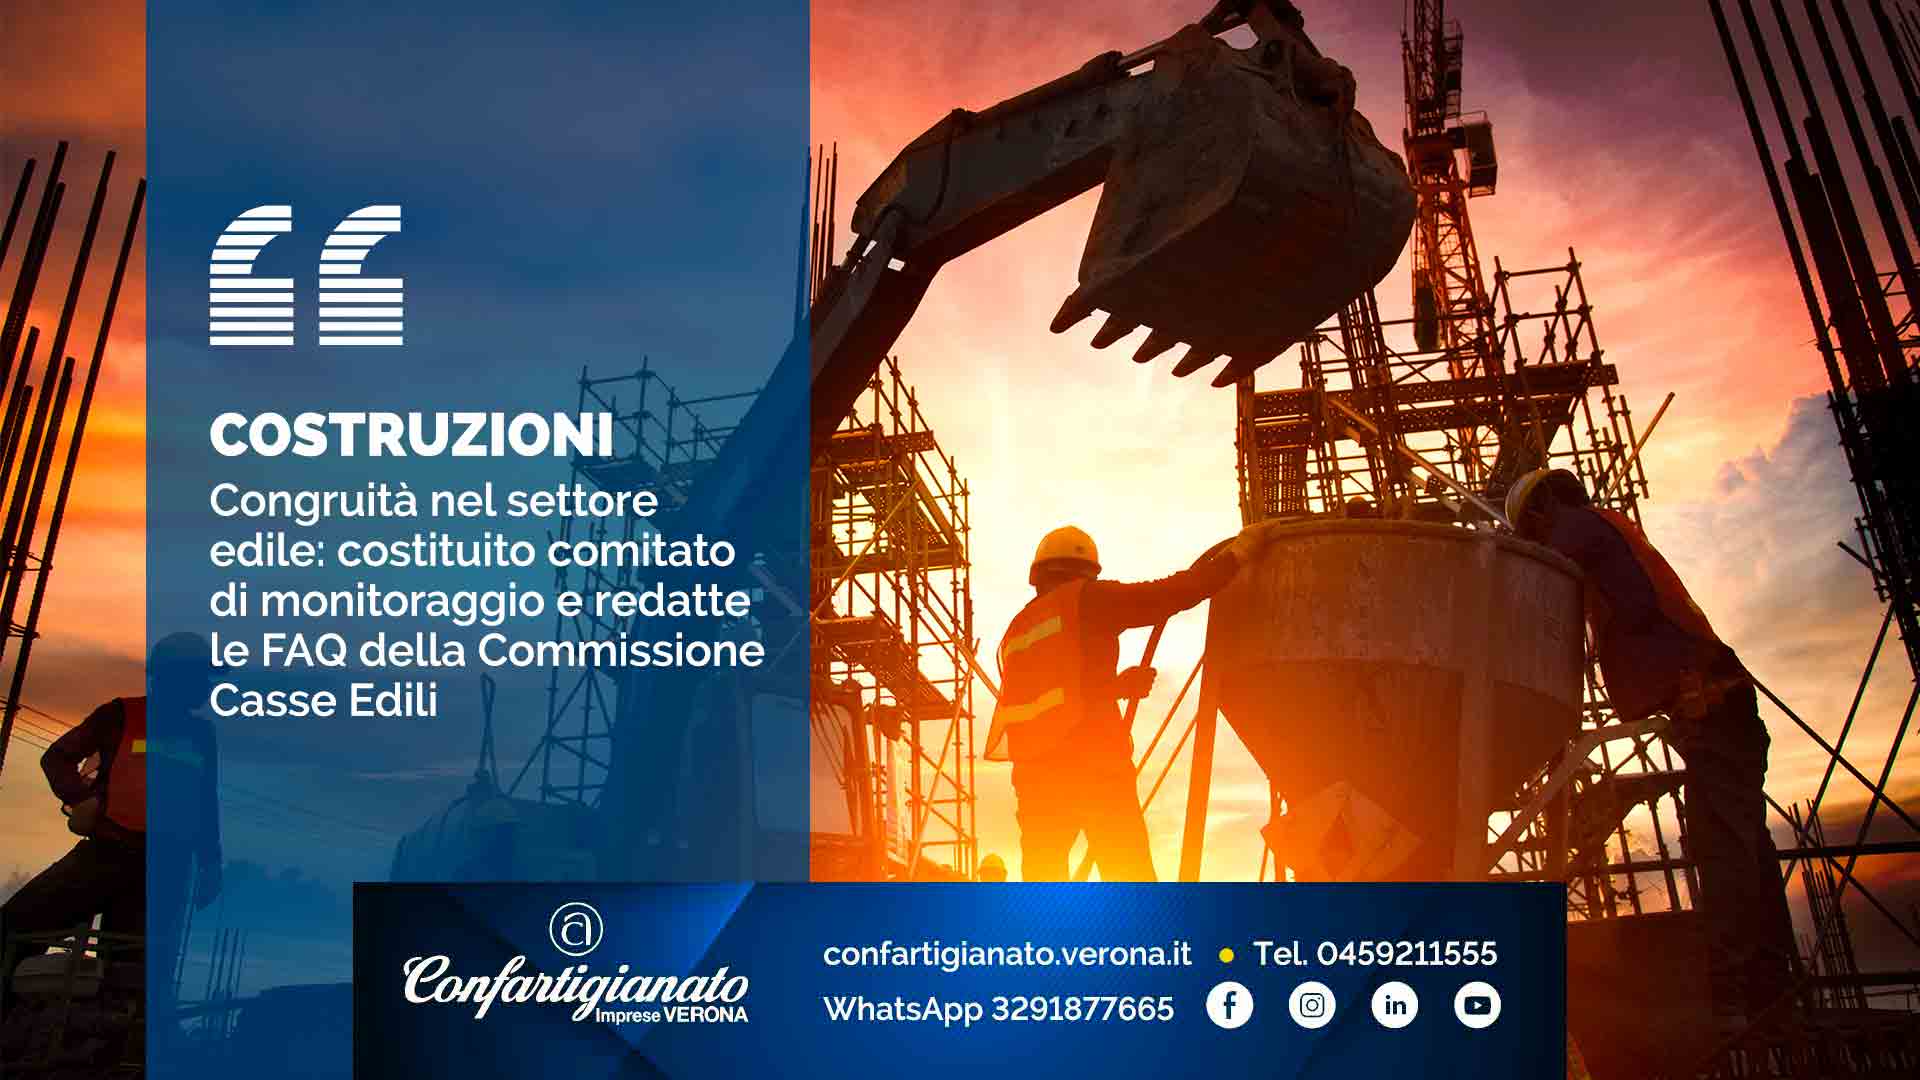 COSTRUZIONI – Congruità nel settore edile: costituito comitato di monitoraggio e redatte le FAQ della Commissione Casse Edili